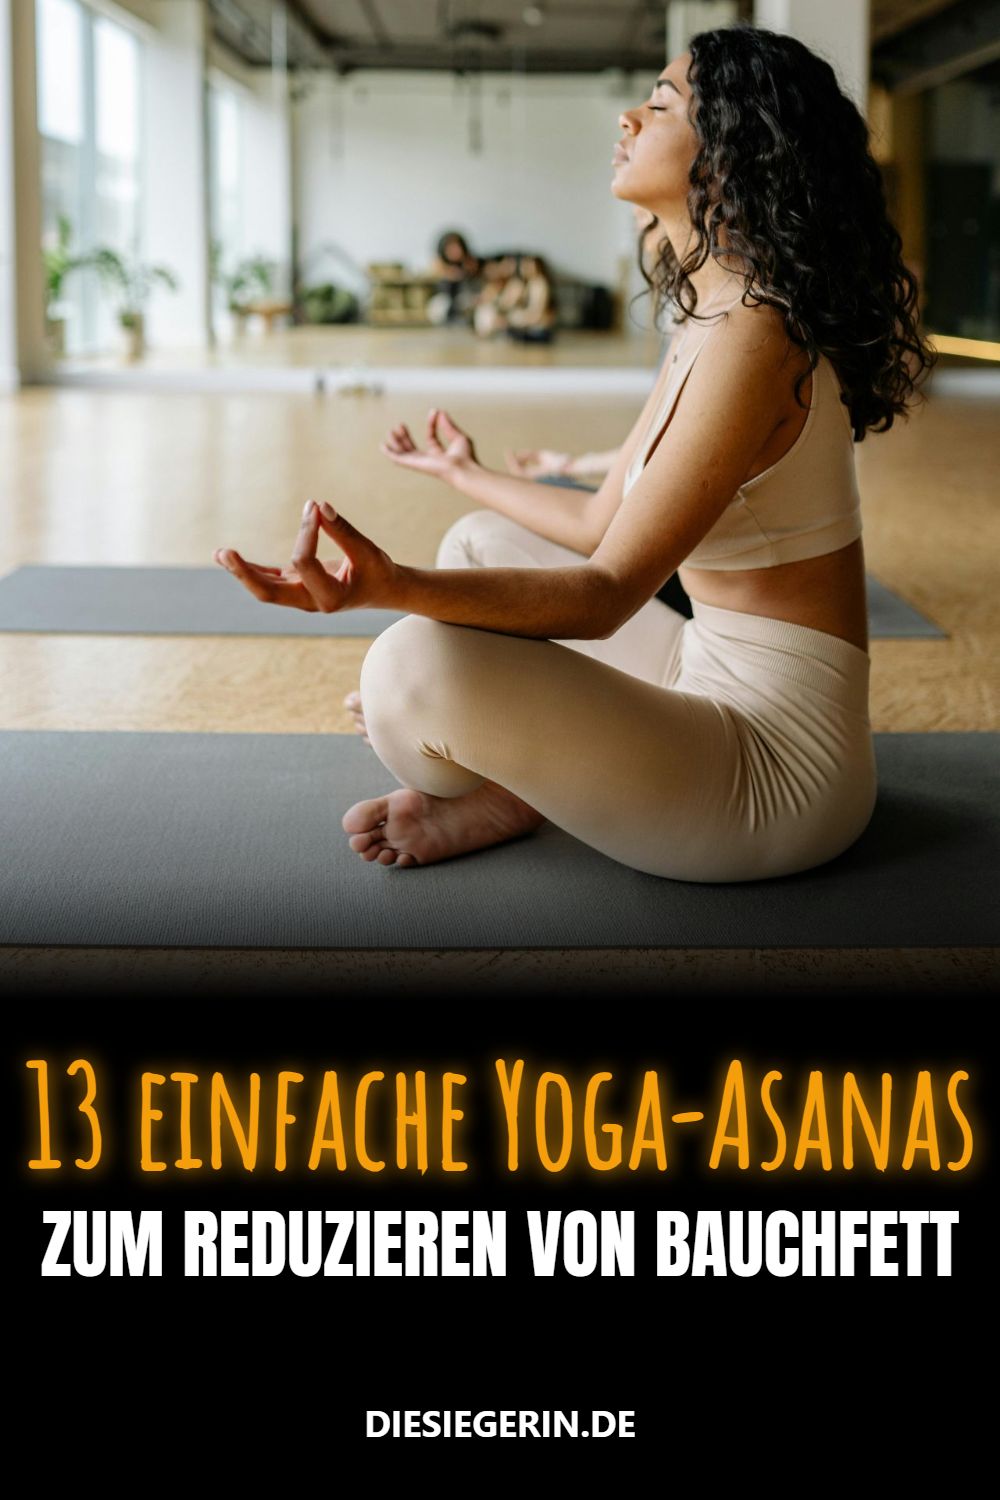 13 einfache Yoga-Asanas ZUM REDUZIEREN VON BAUCHFETT